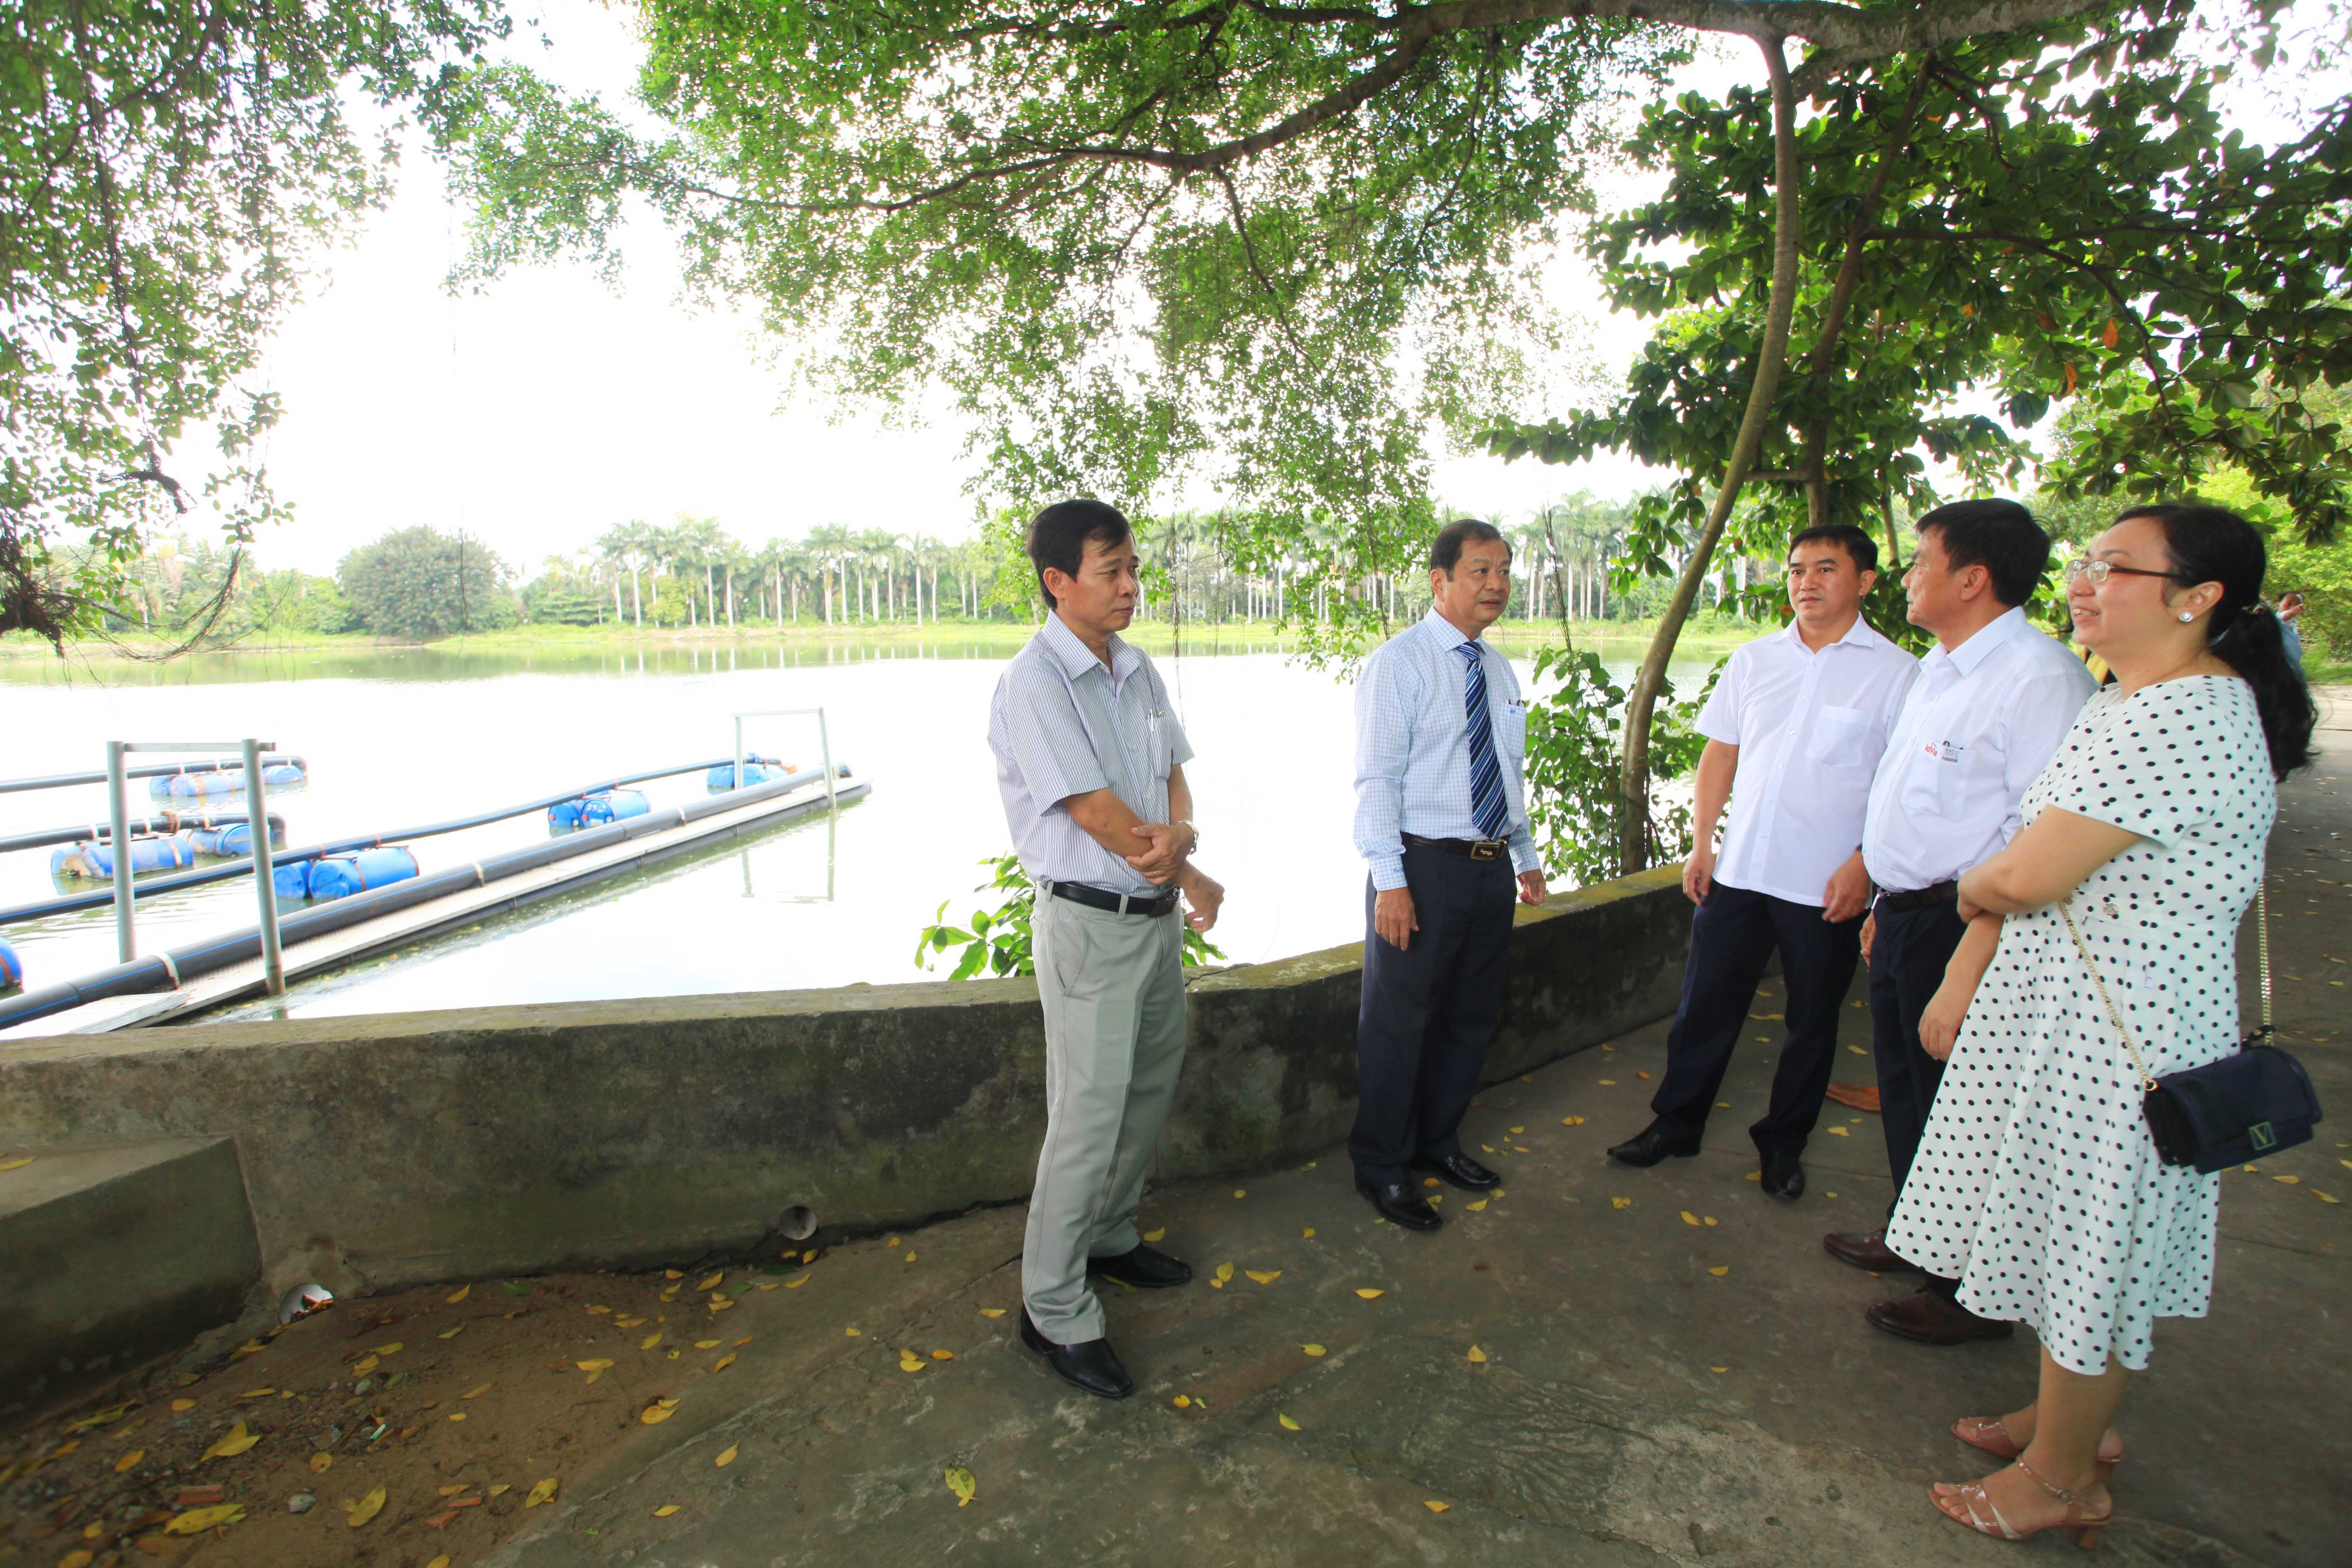  Lãnh đạo Công ty La Vie và Công ty Lawaco thăm hệ thống xử lý nước từ nước mặt hồ Bảo Định